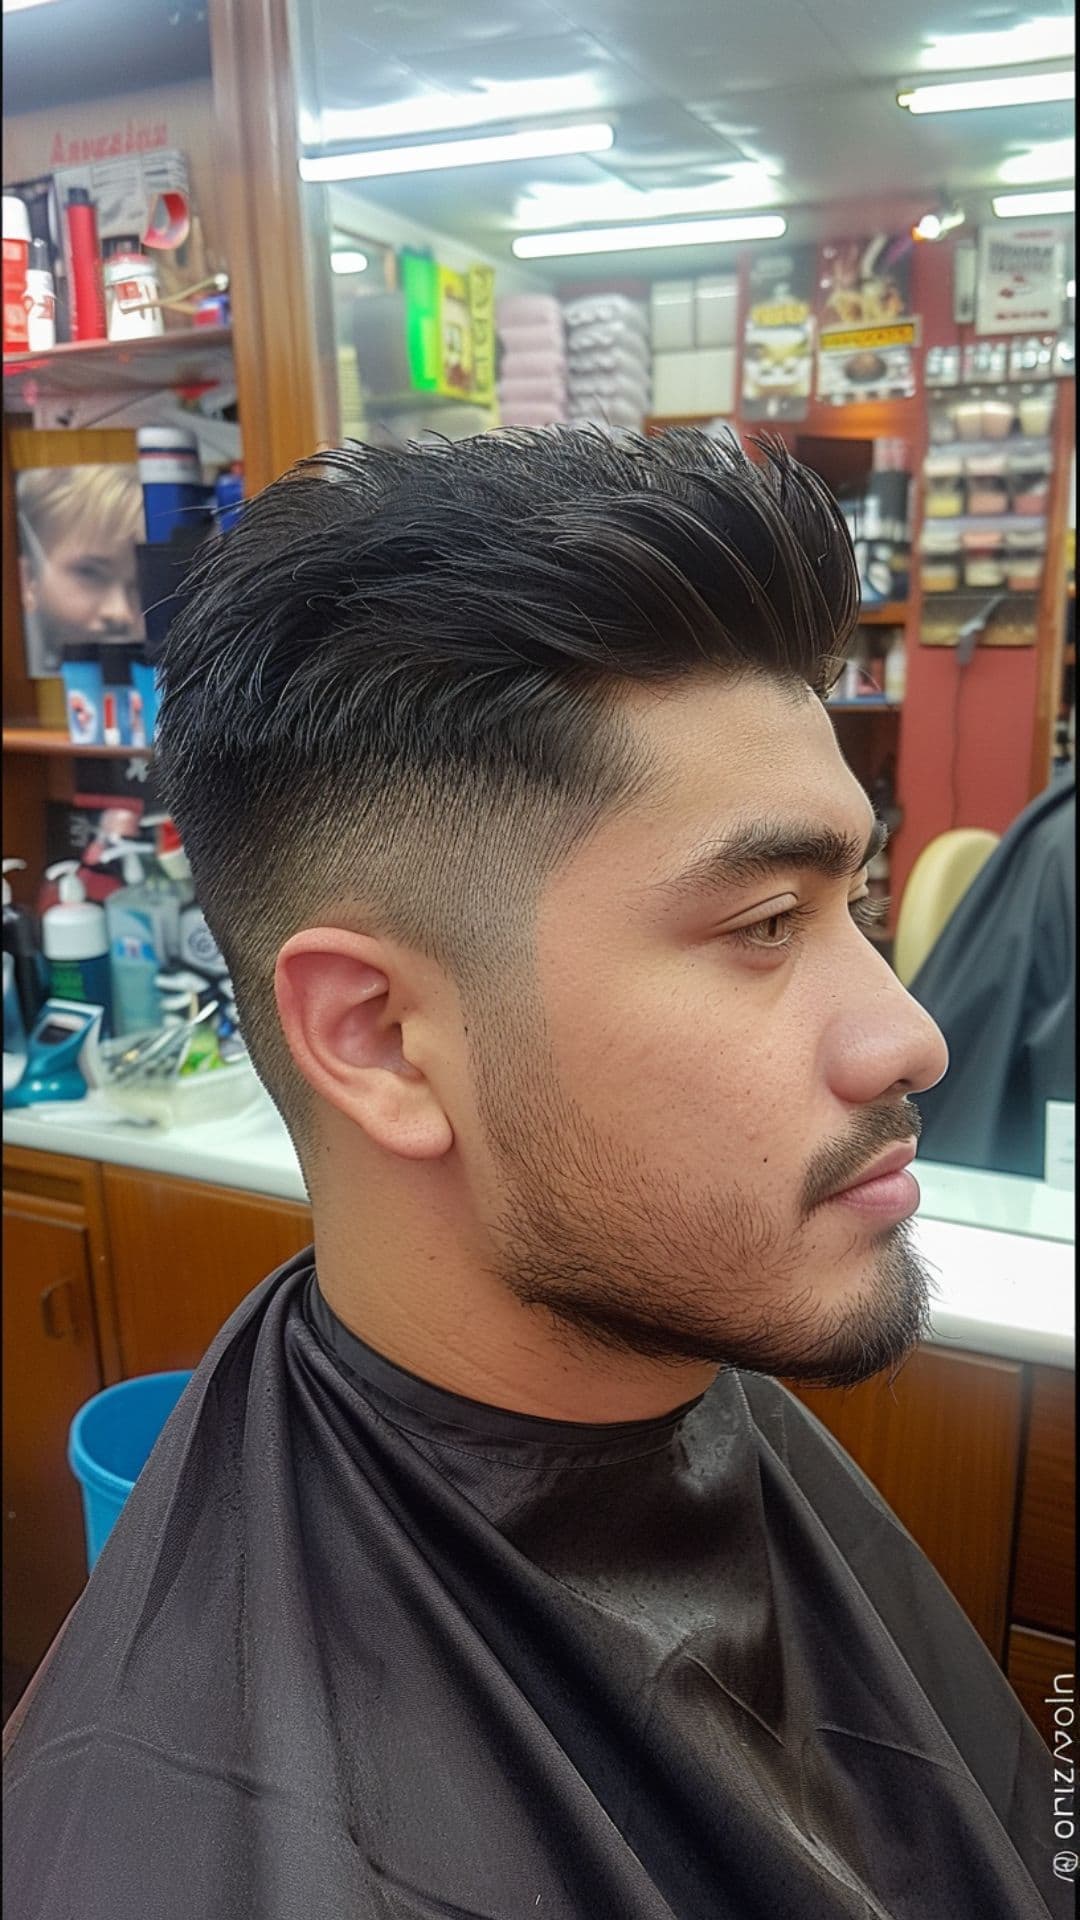 A man modelling an ivy league haircut.